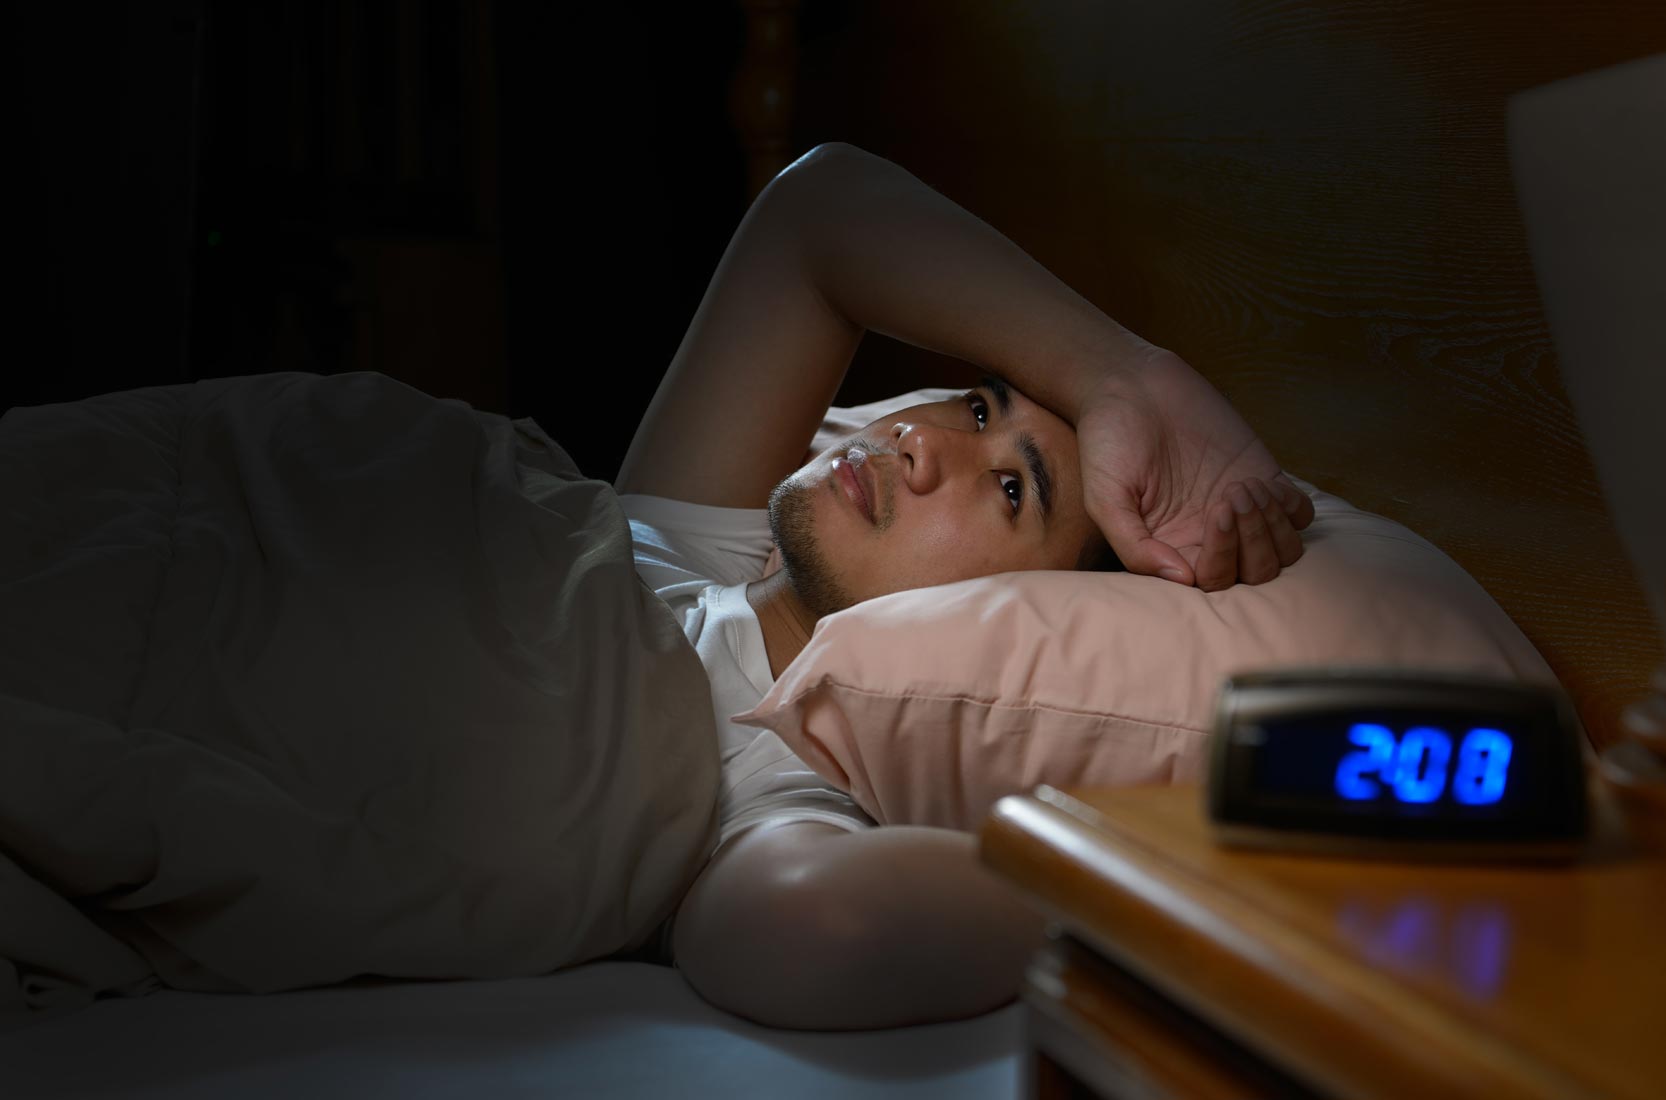 Eisenmangel Symptom für Schlafstörungen